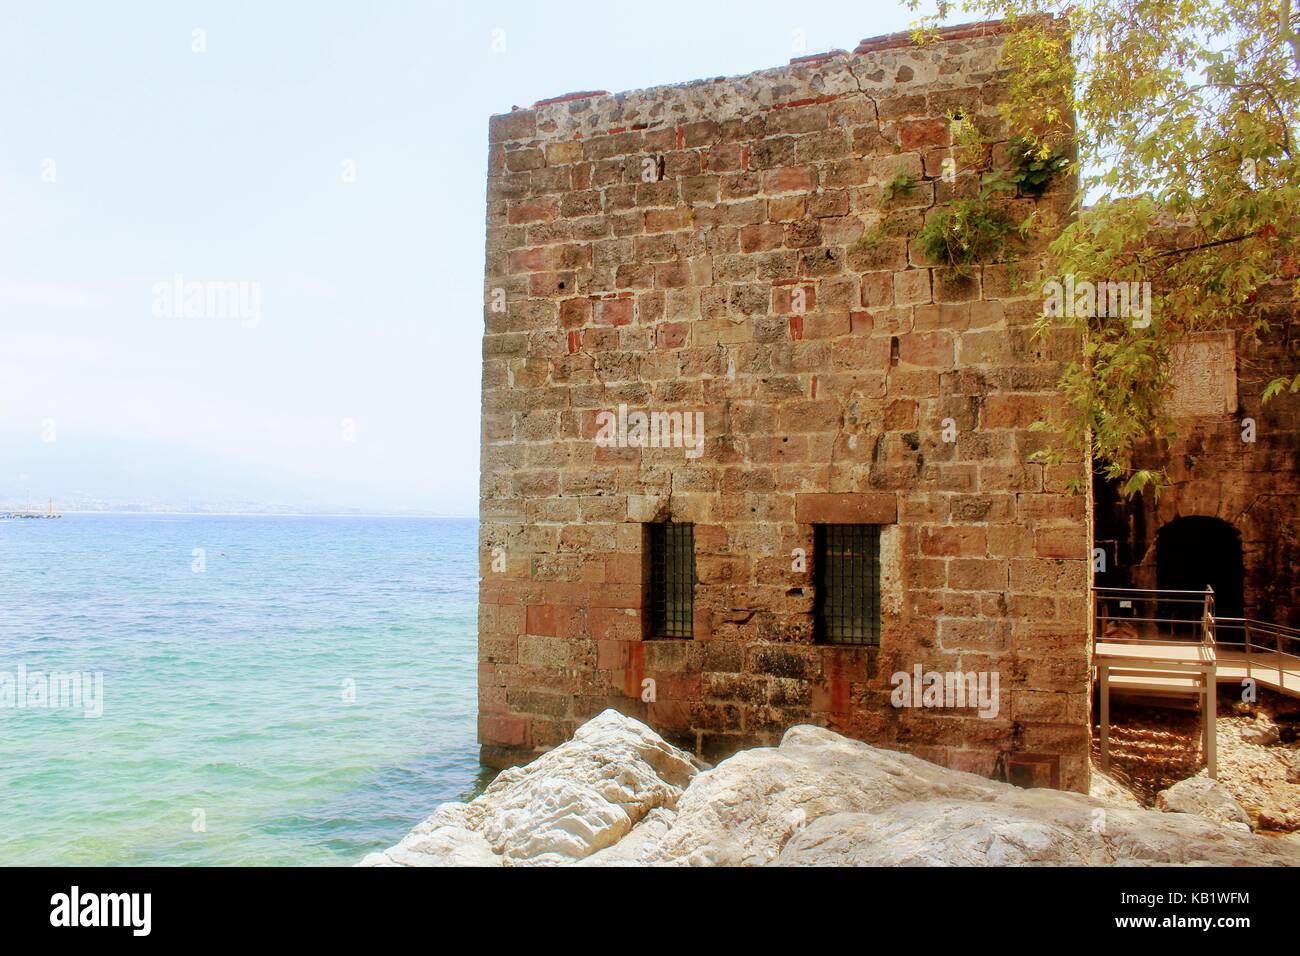 Entrada al antiguo astillero a los pies del castillo de Alanya, alanya (Turquía). Foto de stock